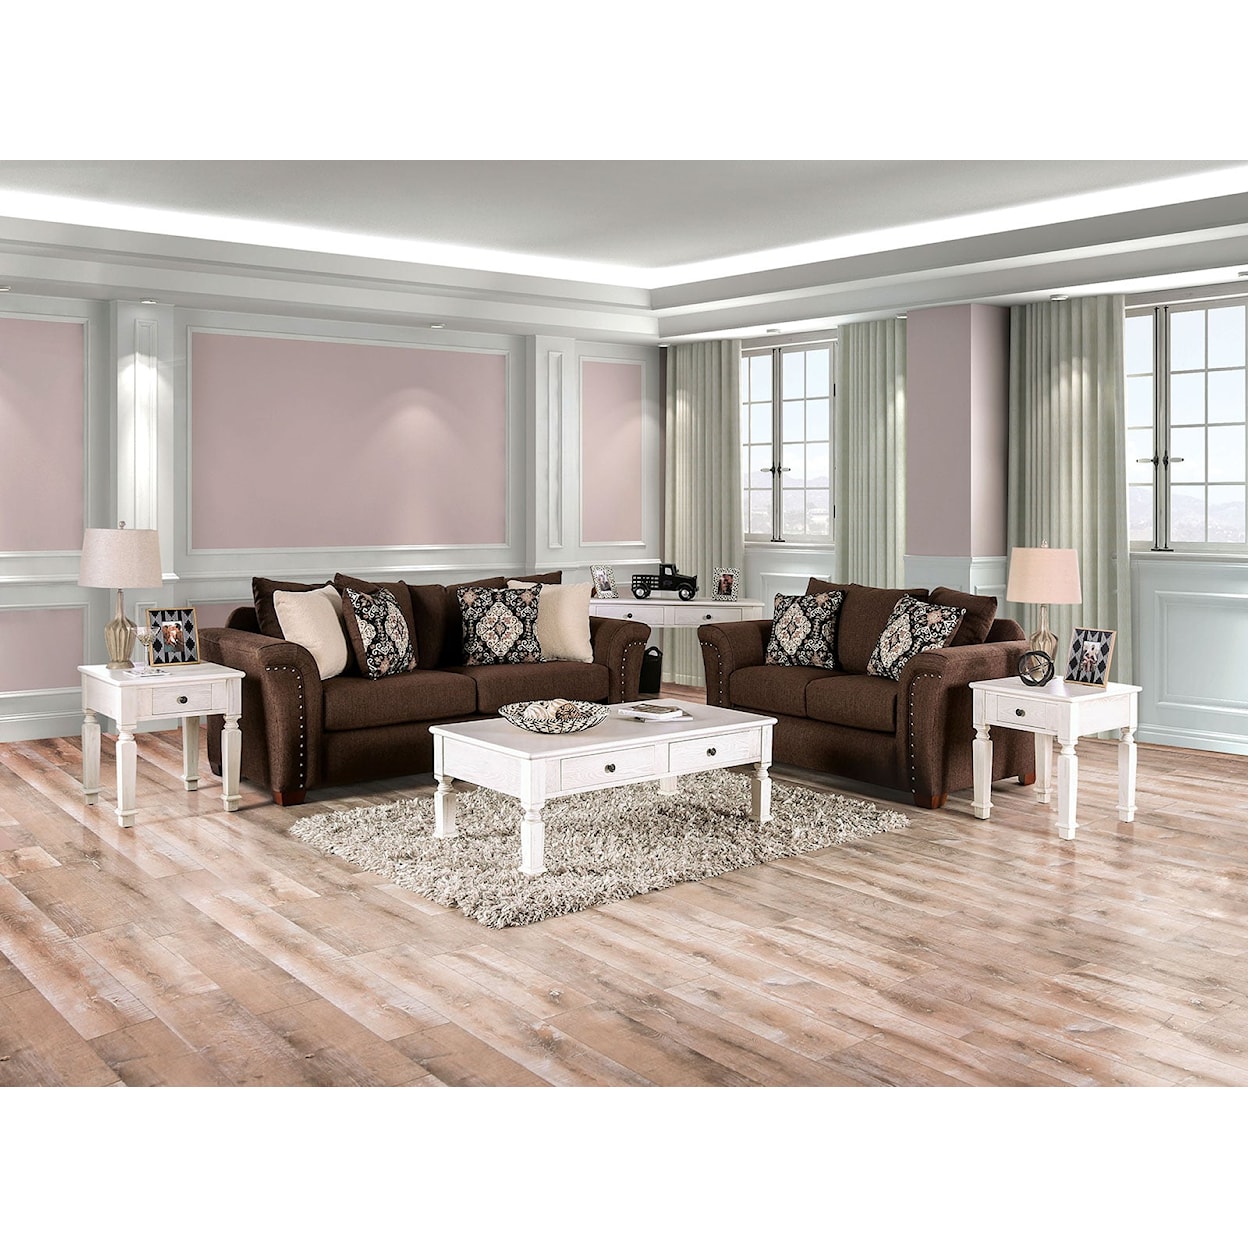 Furniture of America Belsize 2-Piece Living Room Set